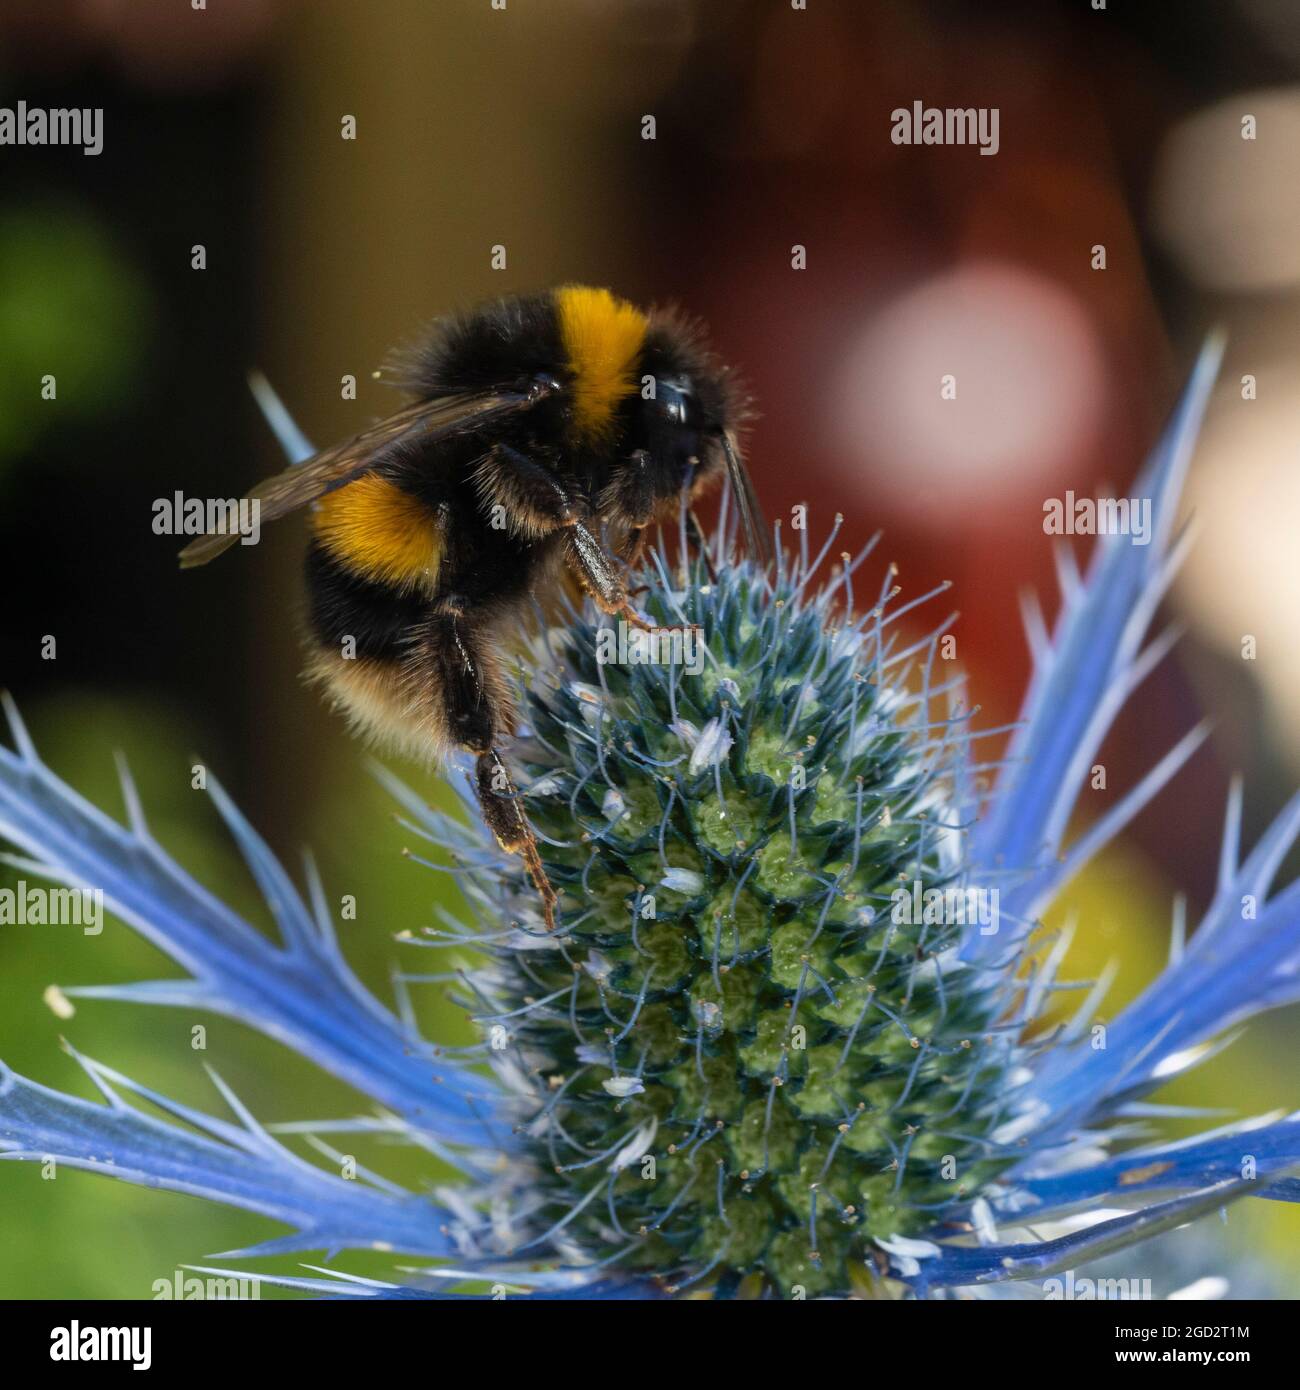 Bombus terrestris, un ouvrier de l'abeille à queue de bumble, se nourrissant sur le jardin vivace Eryngium x zabelii 'Big Blue' dans un jardin de Plymouth, au Royaume-Uni Banque D'Images